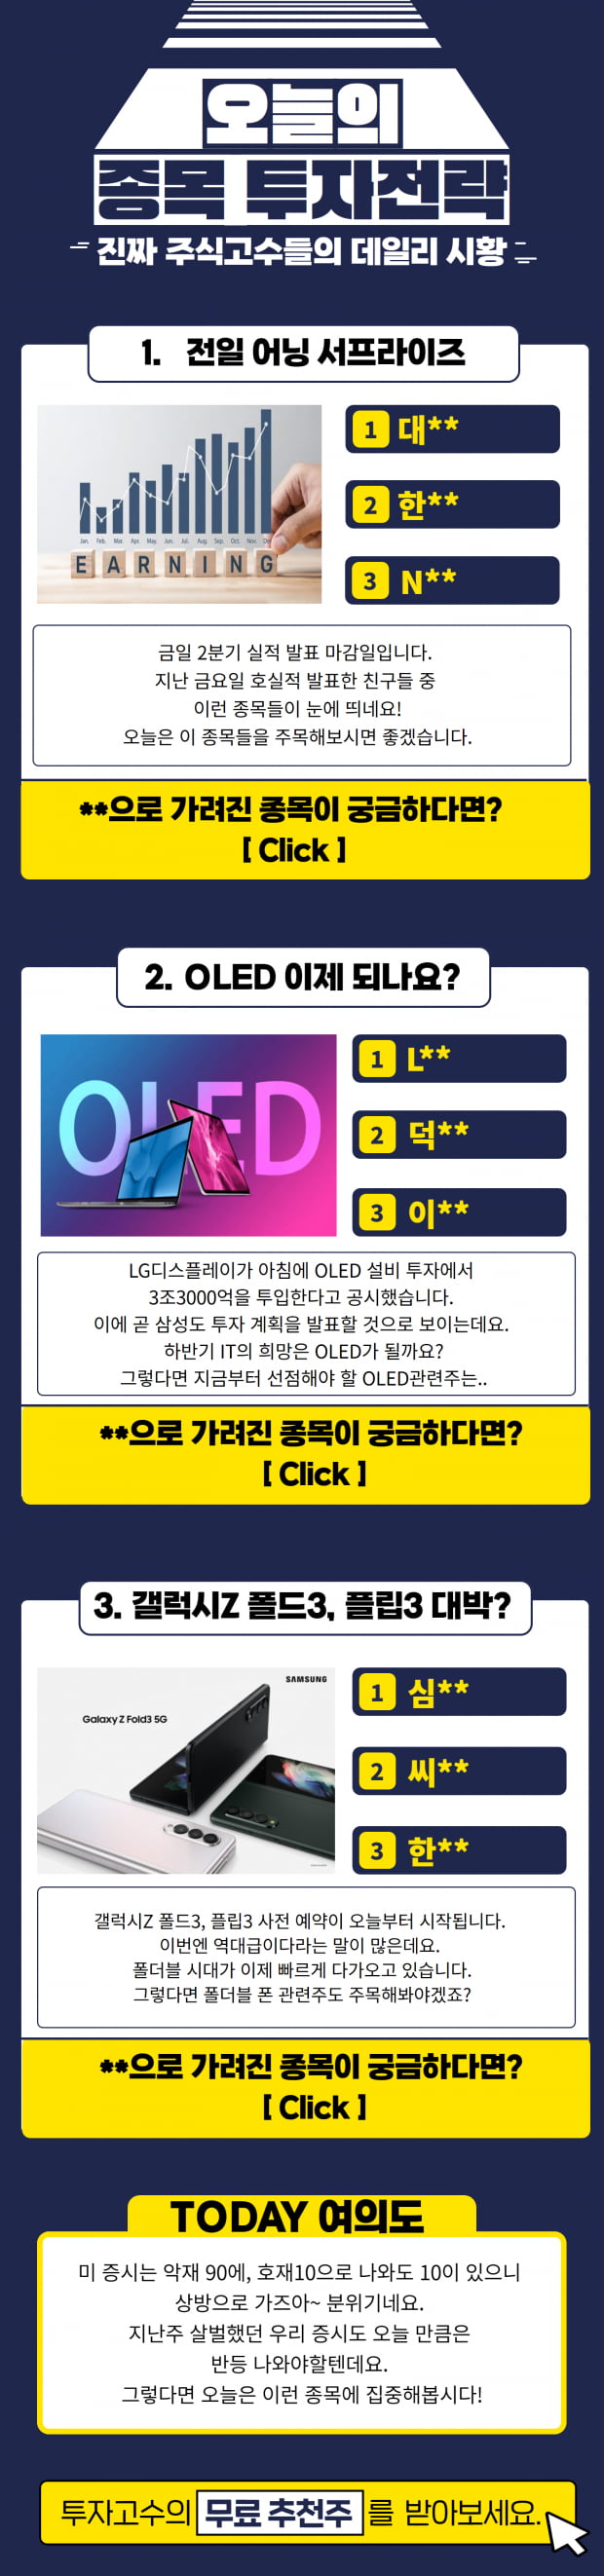 하락장 속 급등예상 Top3 종목!! (Click)